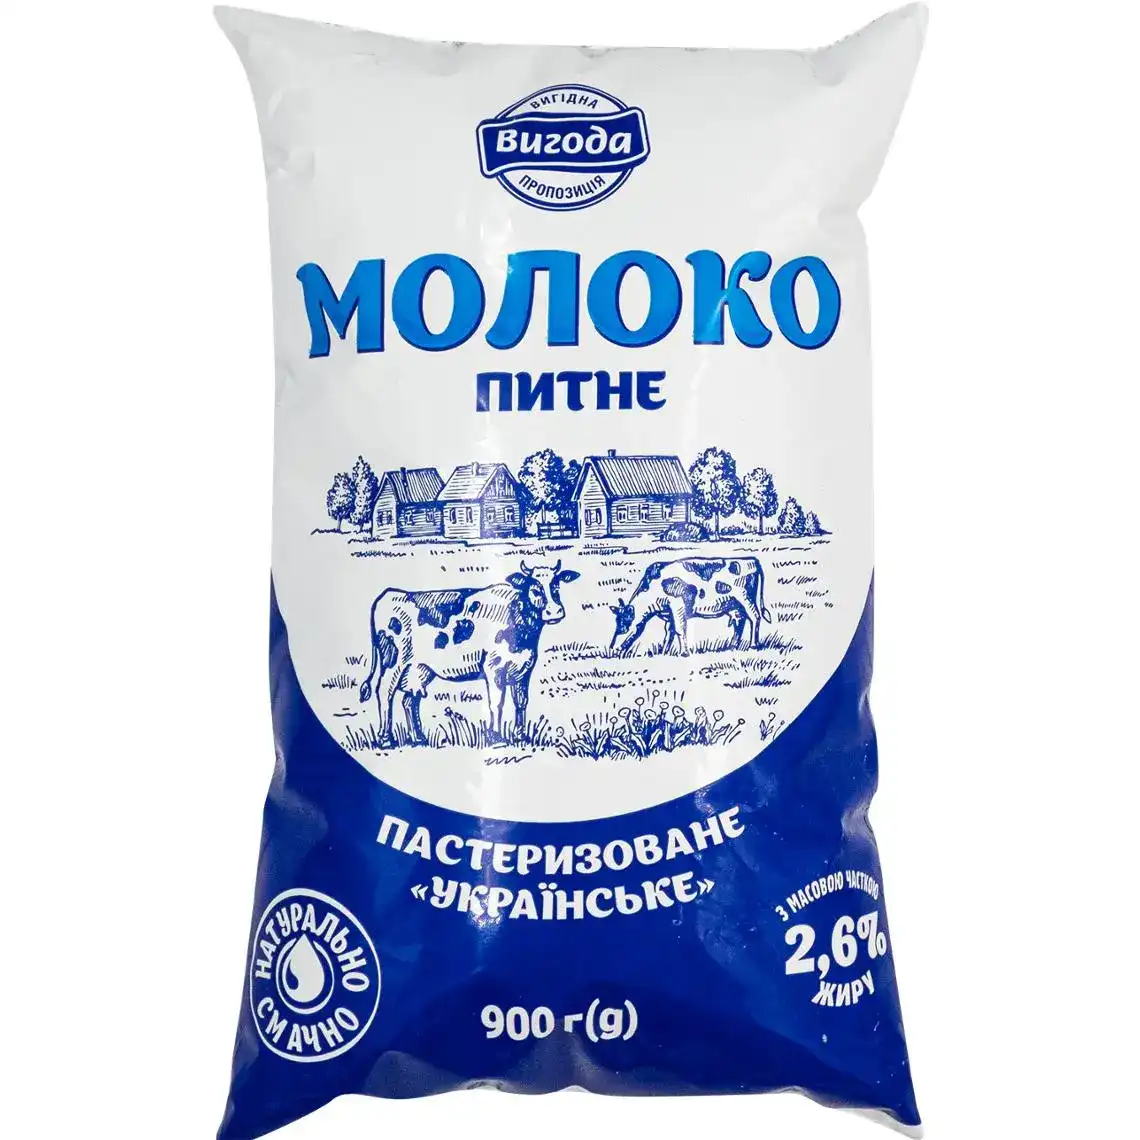 Молоко Вигода Українське 2.6% пастеризоване 900 г